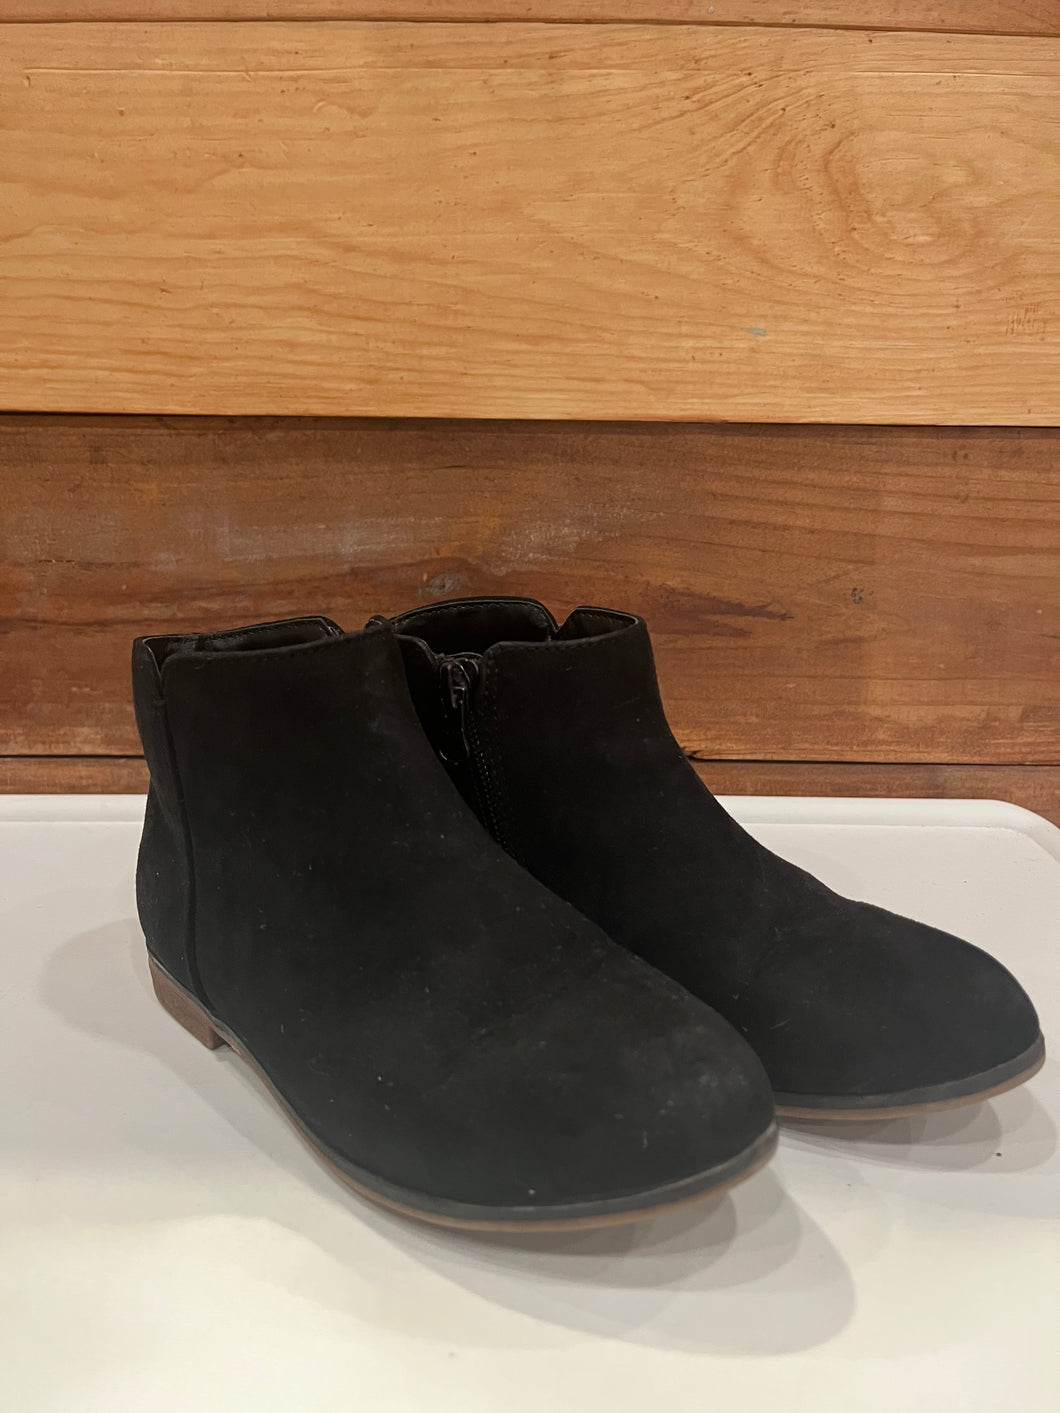 Cat & Jack Black Boots Size 12